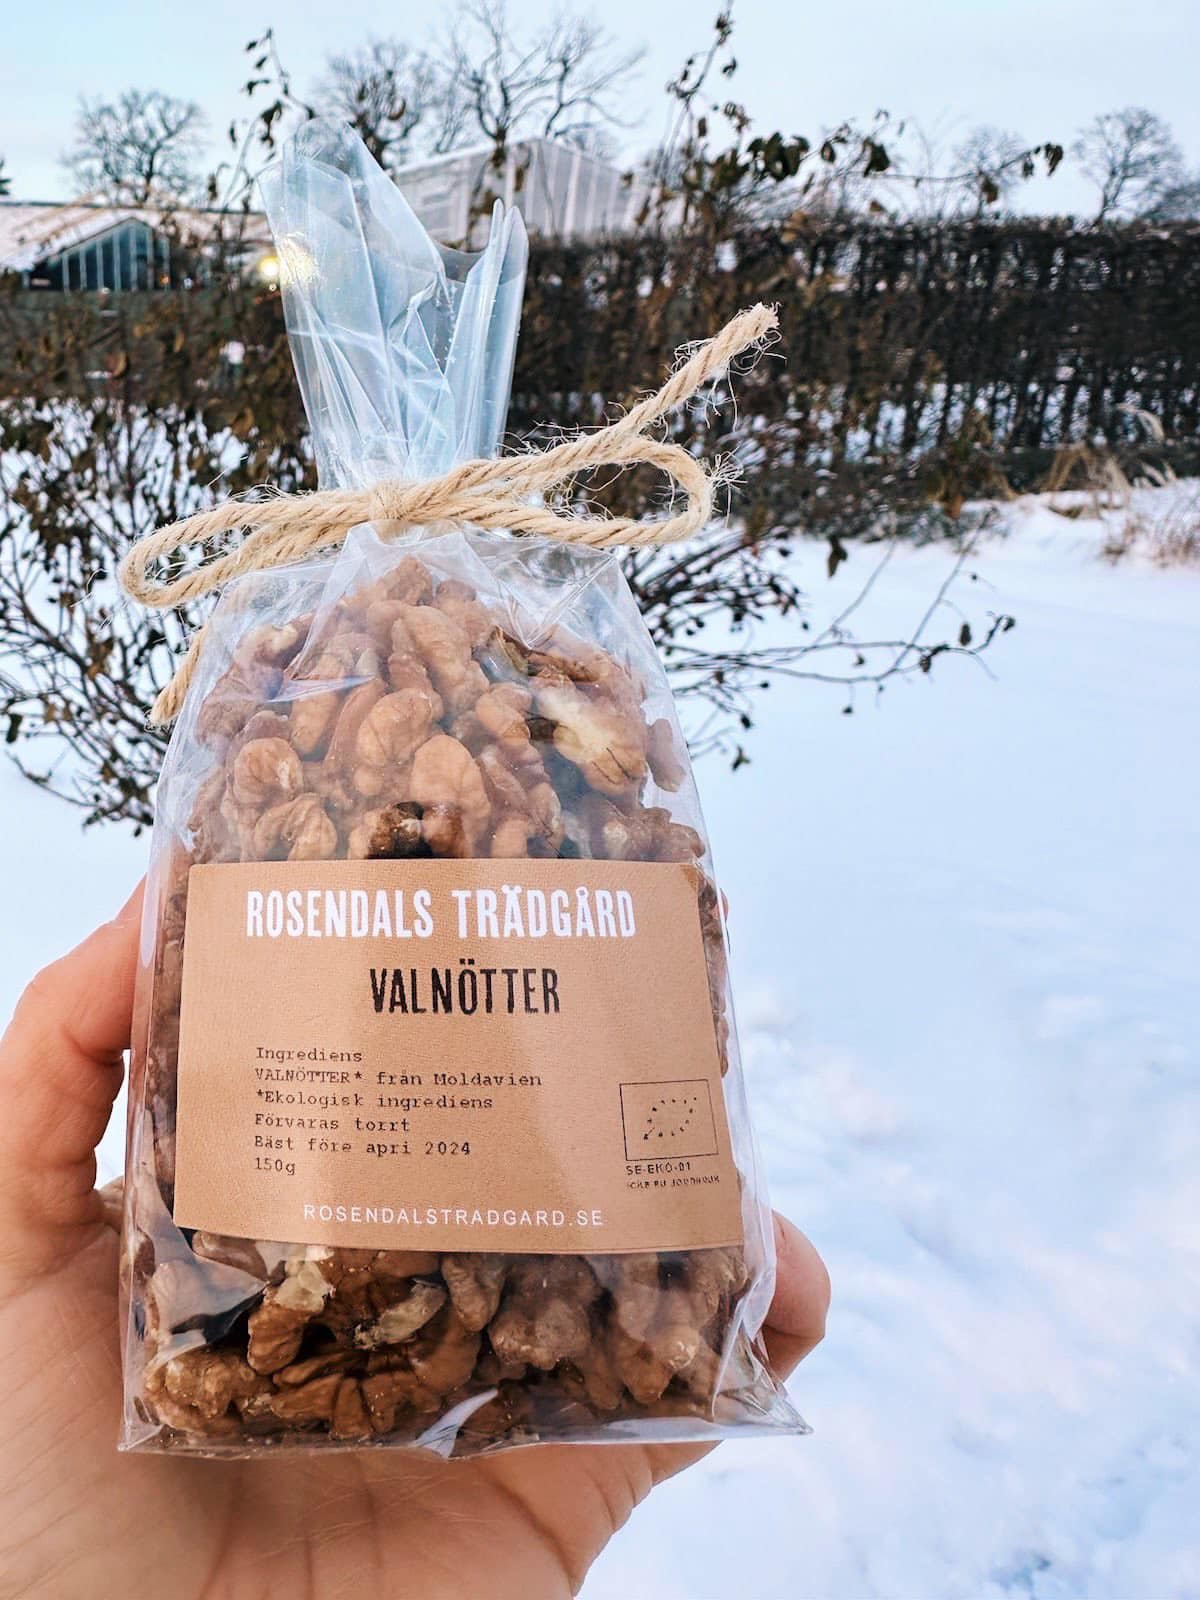 (ФОТО) В королевском ботаническом саду в Стокгольме продают молдавские орехи